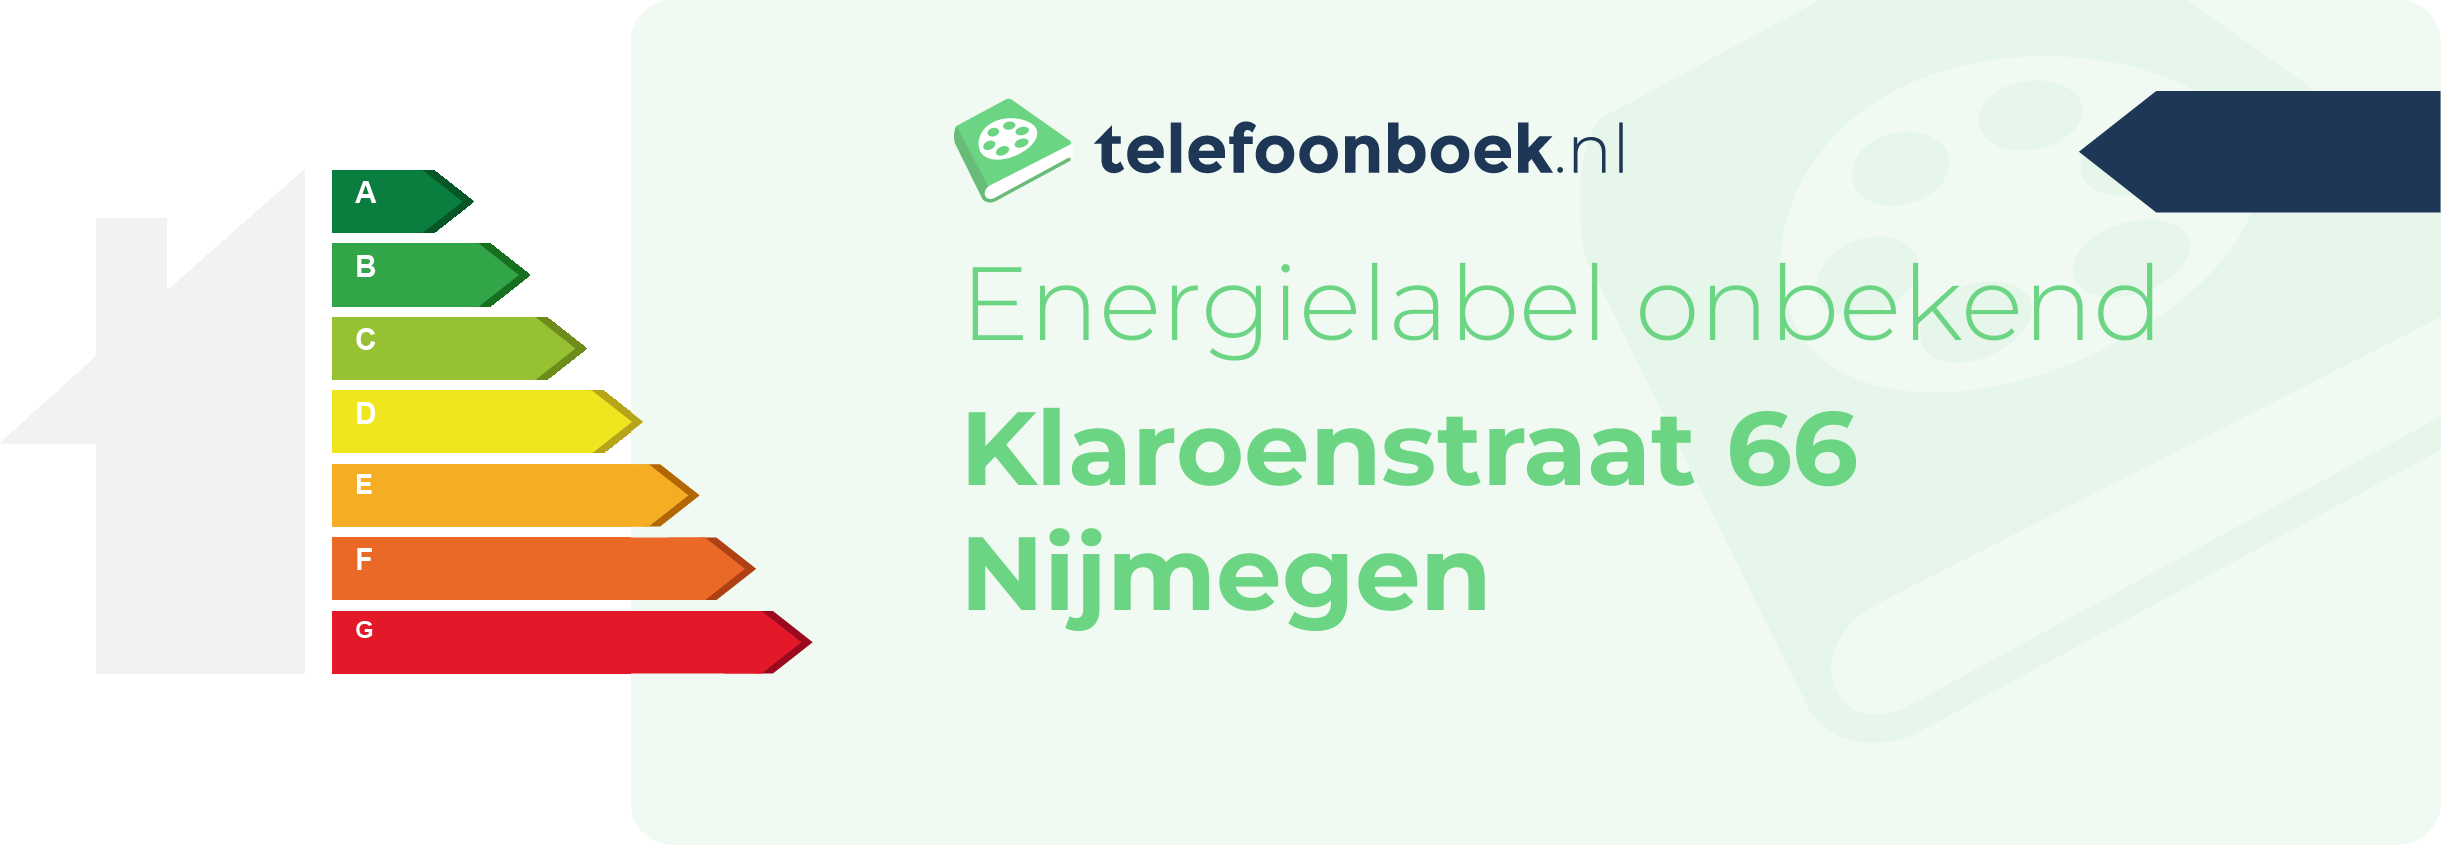 Energielabel Klaroenstraat 66 Nijmegen